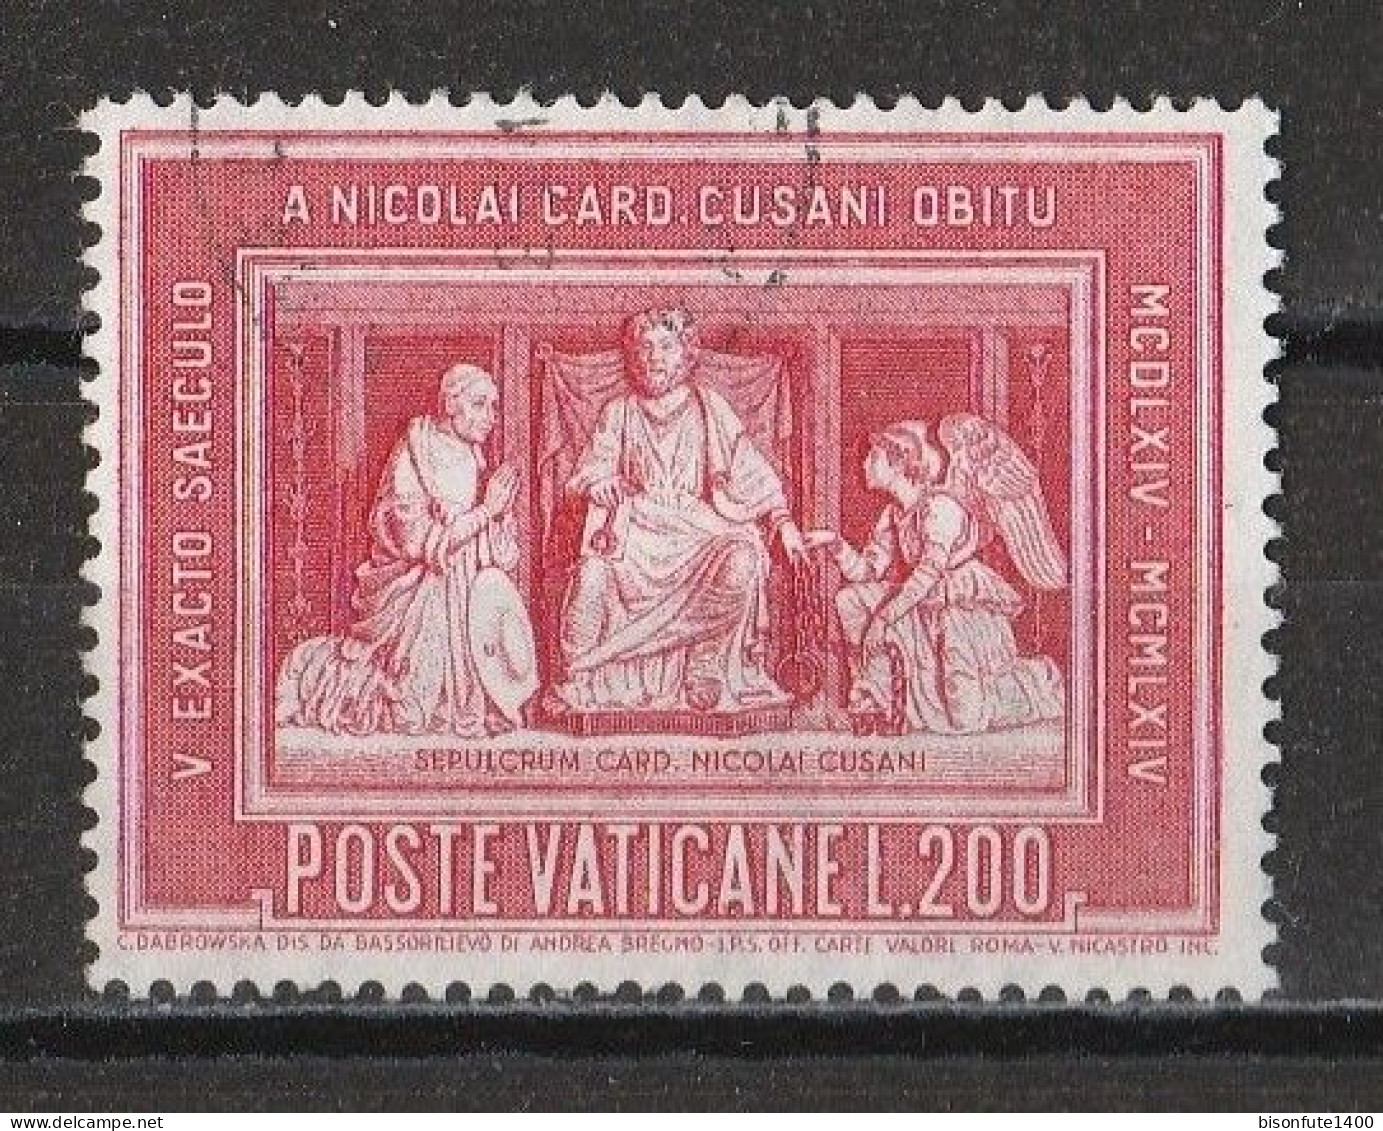 Vatican 1964 : Timbres Yvert & Tellier N° 405 - 406 - 407 - 408 - 409 - 410 - 411 - 412 - 413 Et 414 Oblitérés. - Oblitérés